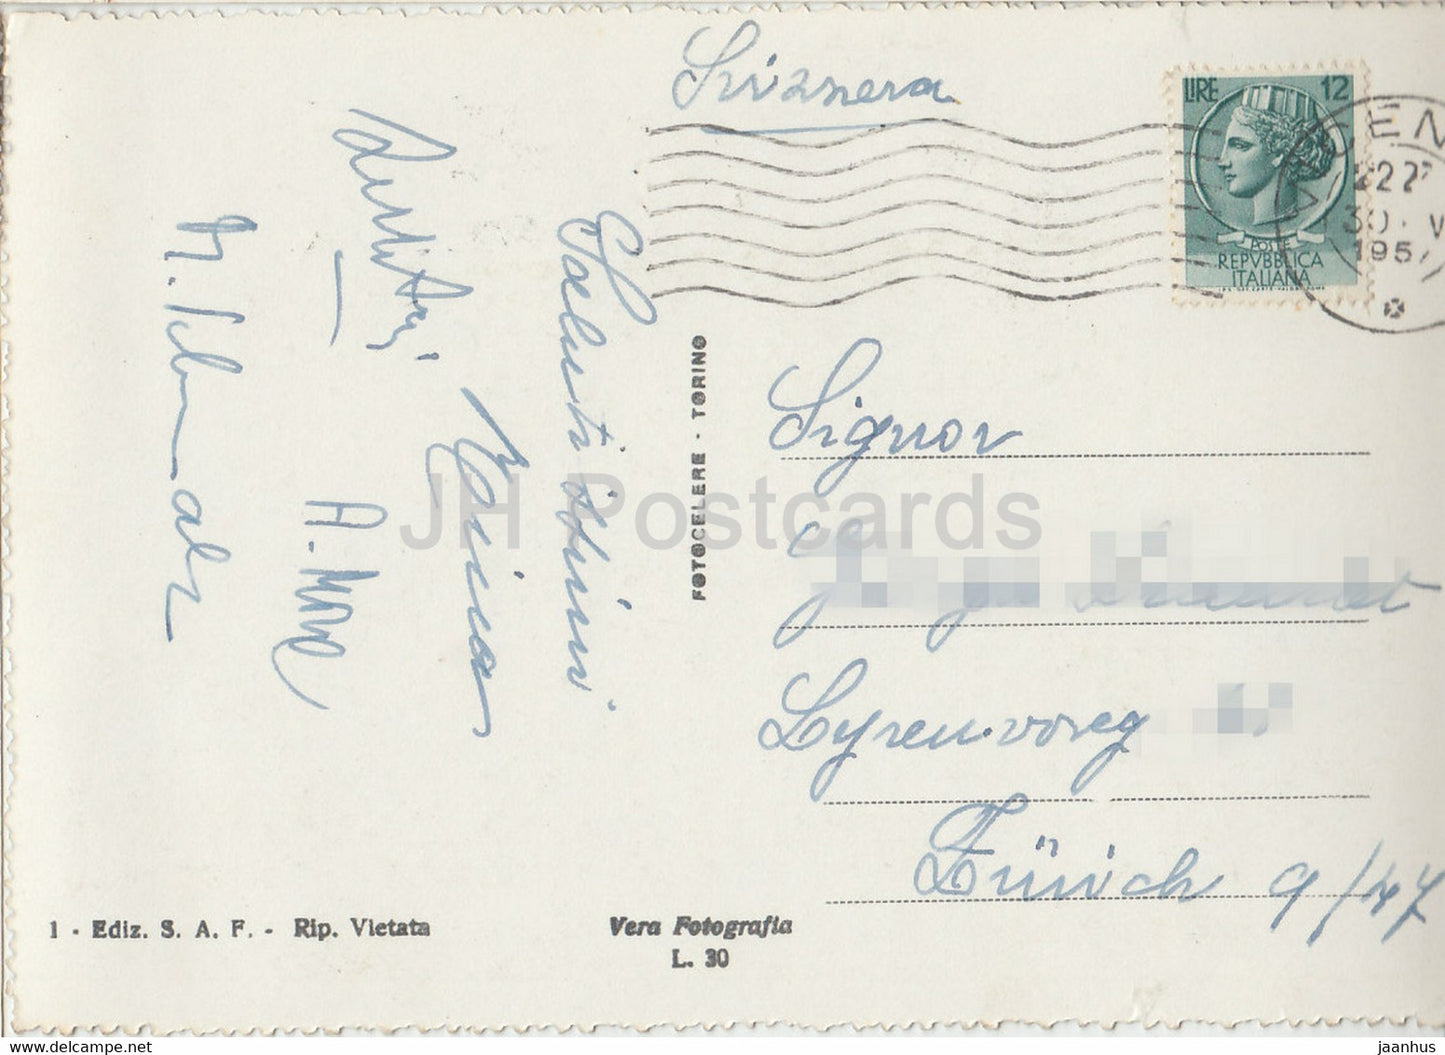 Vicence - Basilique di Monte Berico dal Piazzale della Vittoria - canon - carte postale ancienne - 1957 - Italie - utilisé